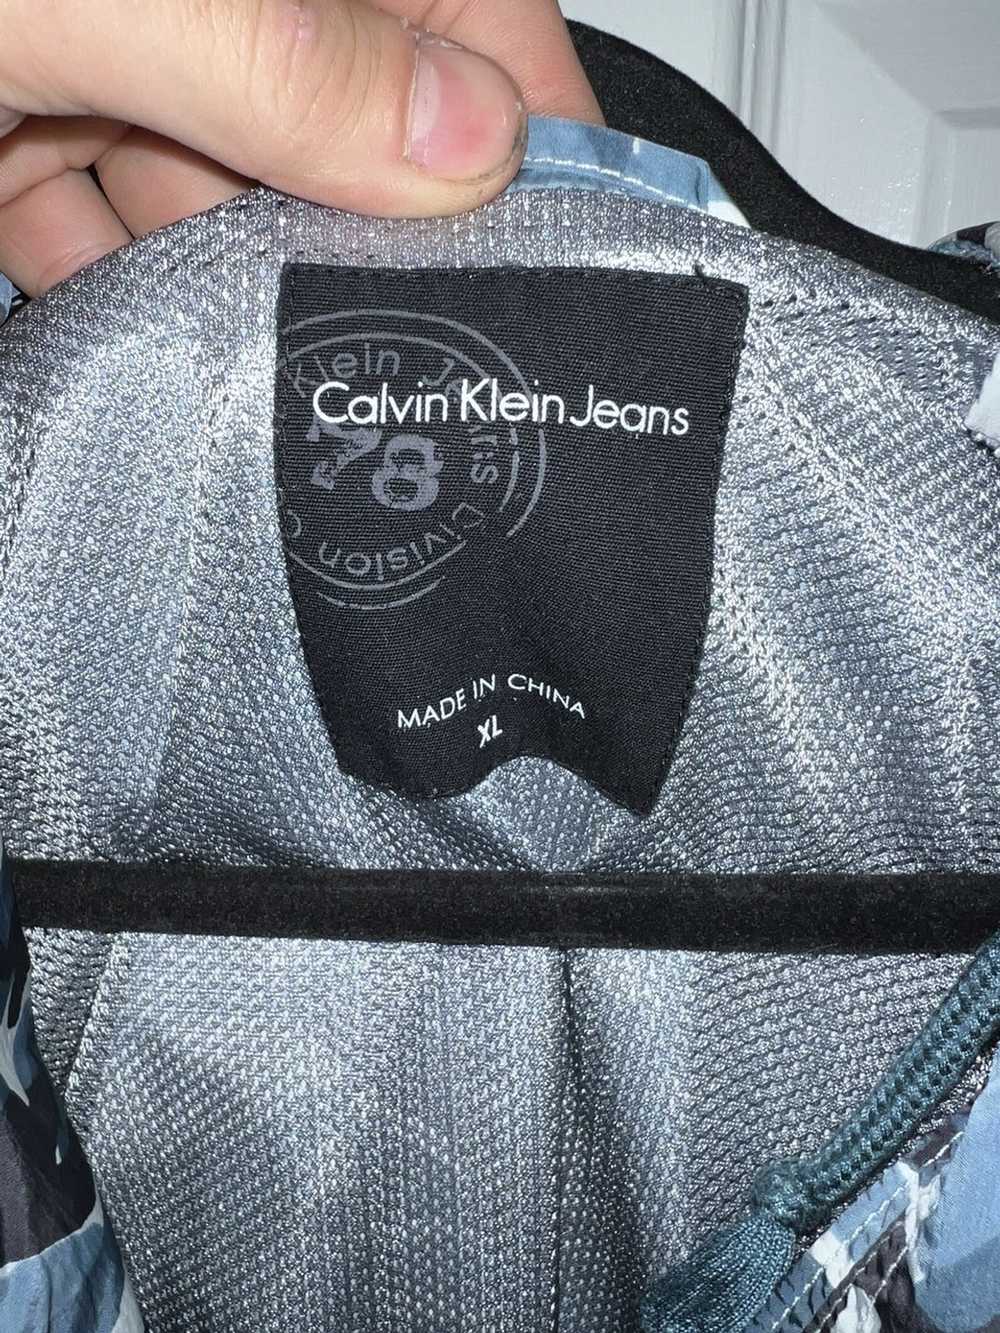 Calvin Klein Calvin Klein Jeans Camo Jacket - image 3